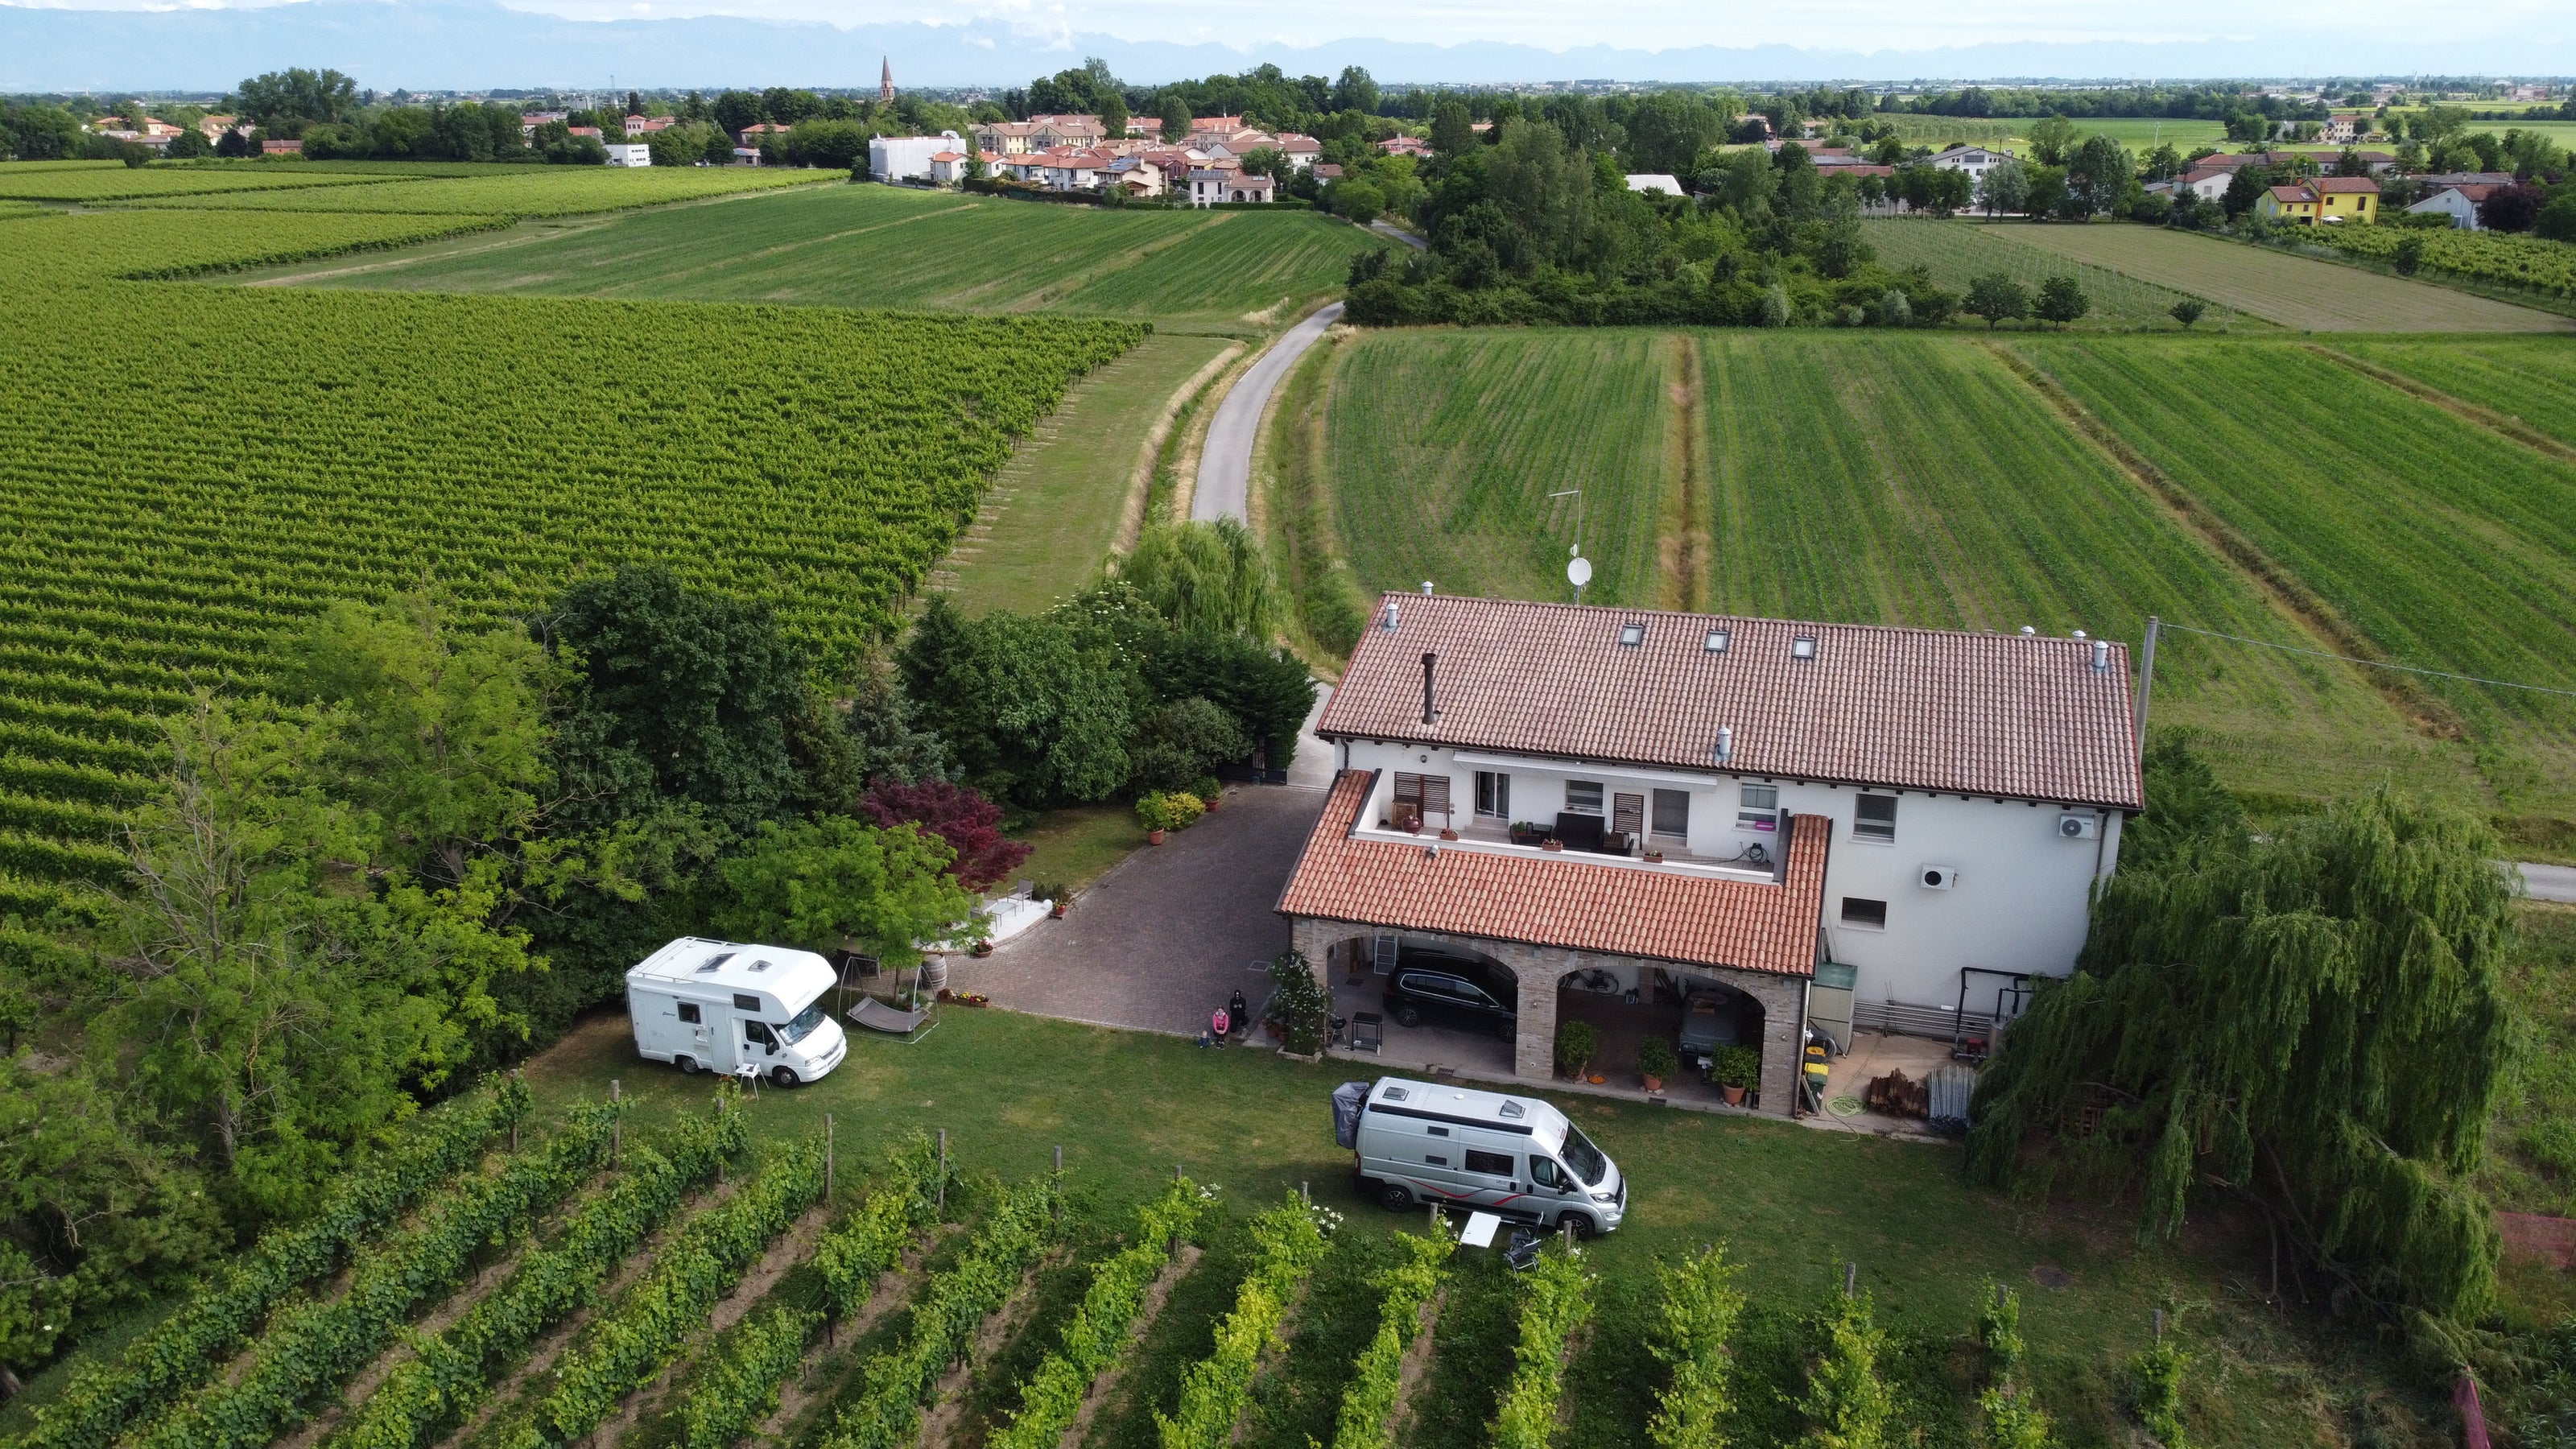 Das Weingut Sfriso von einer Drohne aus gesehen, die die vor dem Weinberg geparkten Wohnmobile und das von grünen Feldern umgebene Weingut zeigt